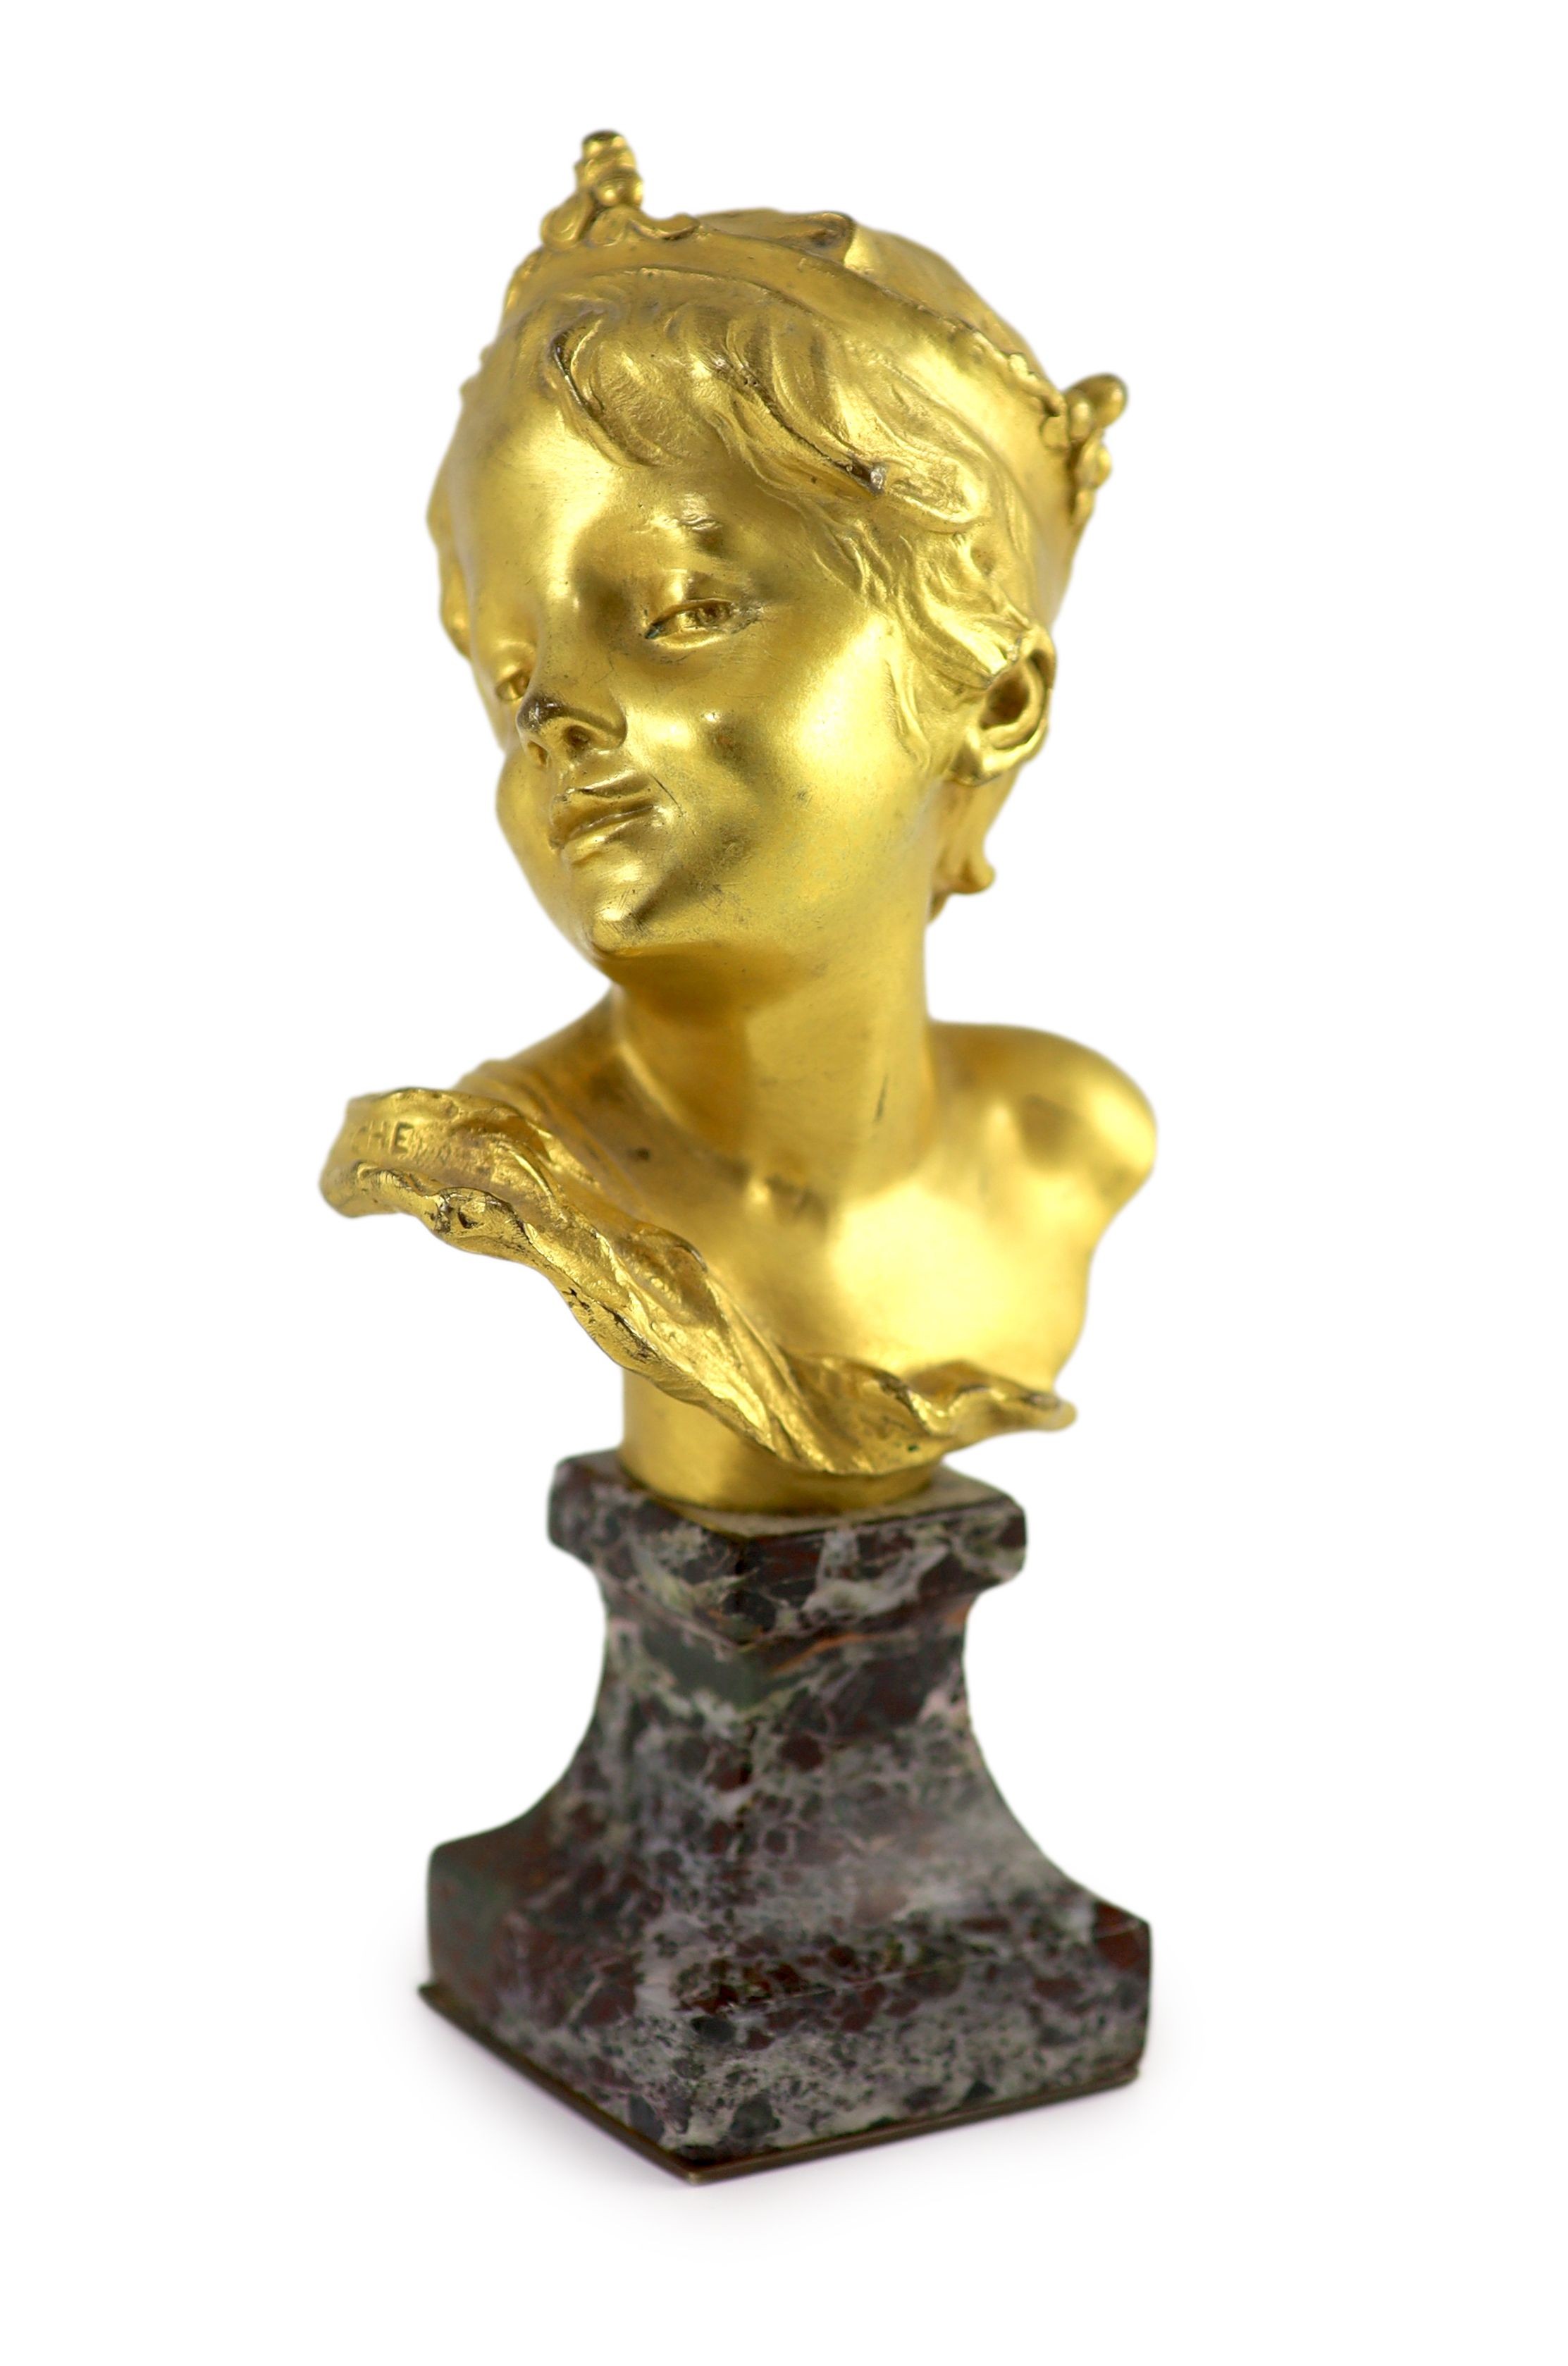 Raoul Francois Larche (1860 - 1912). An ormolu head of a boy king, 16.5cm high overall